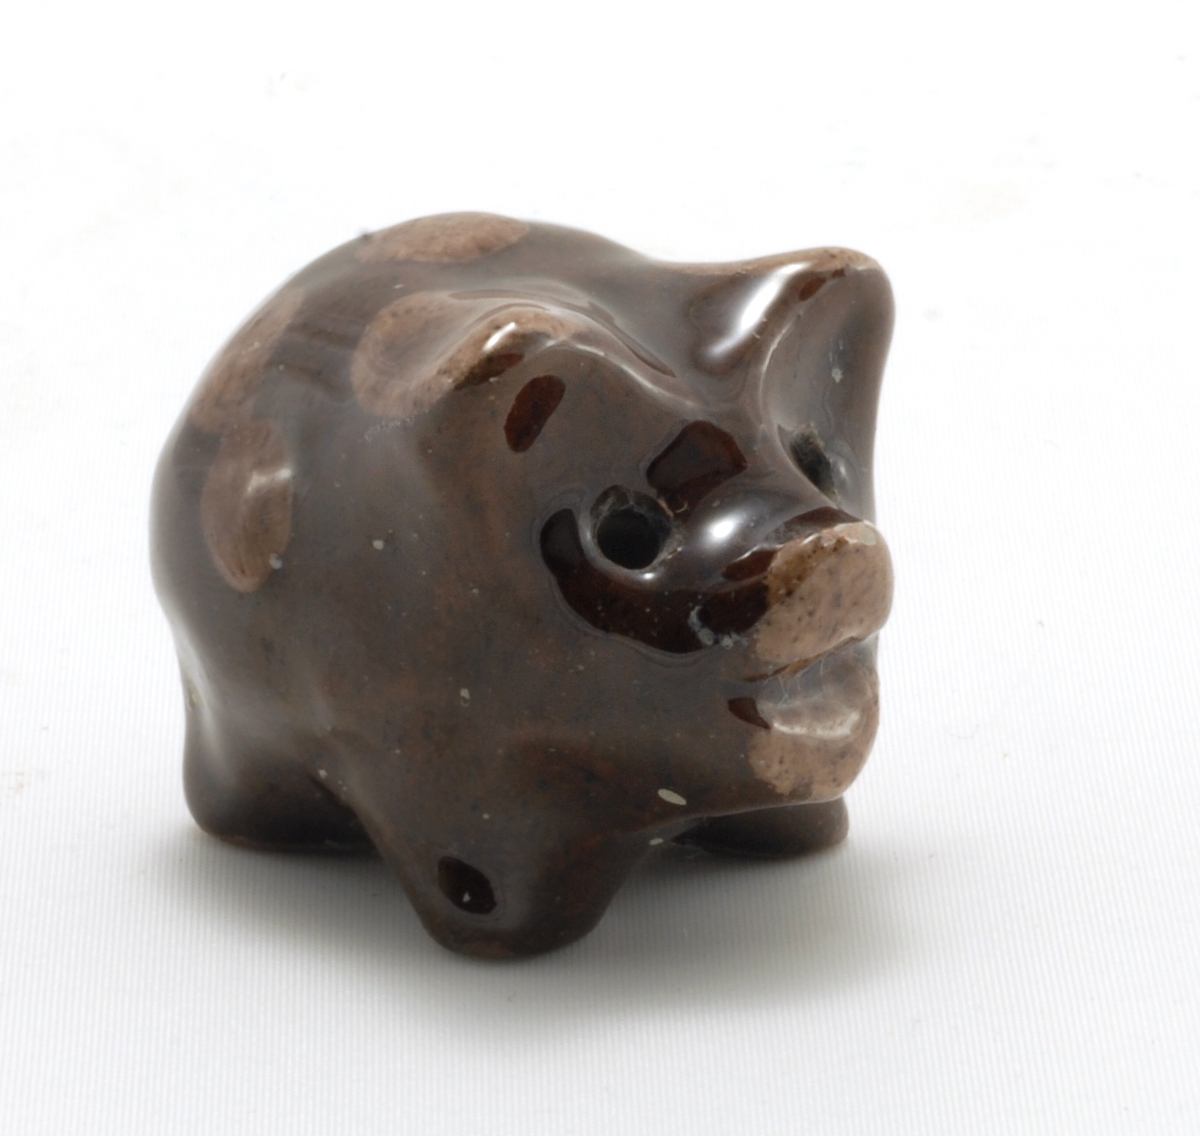 Liten gris med glasur. Modellert med 4 bein, nese og ører. Ører og nese samt felter malt i lysere brunfarge.